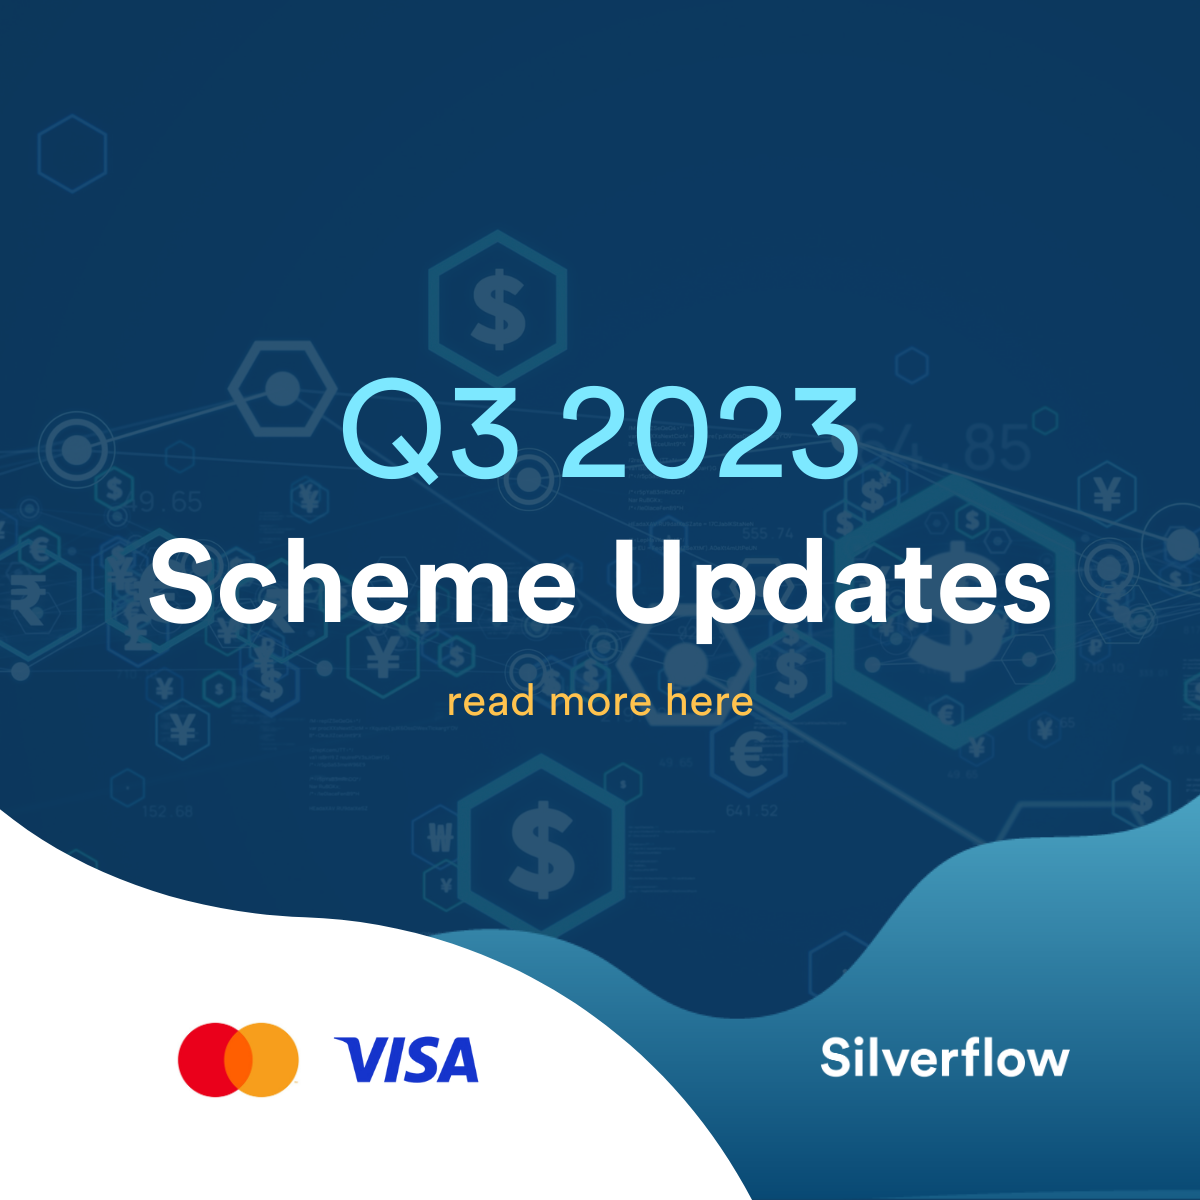 Q3 2023 - Scheme Updates